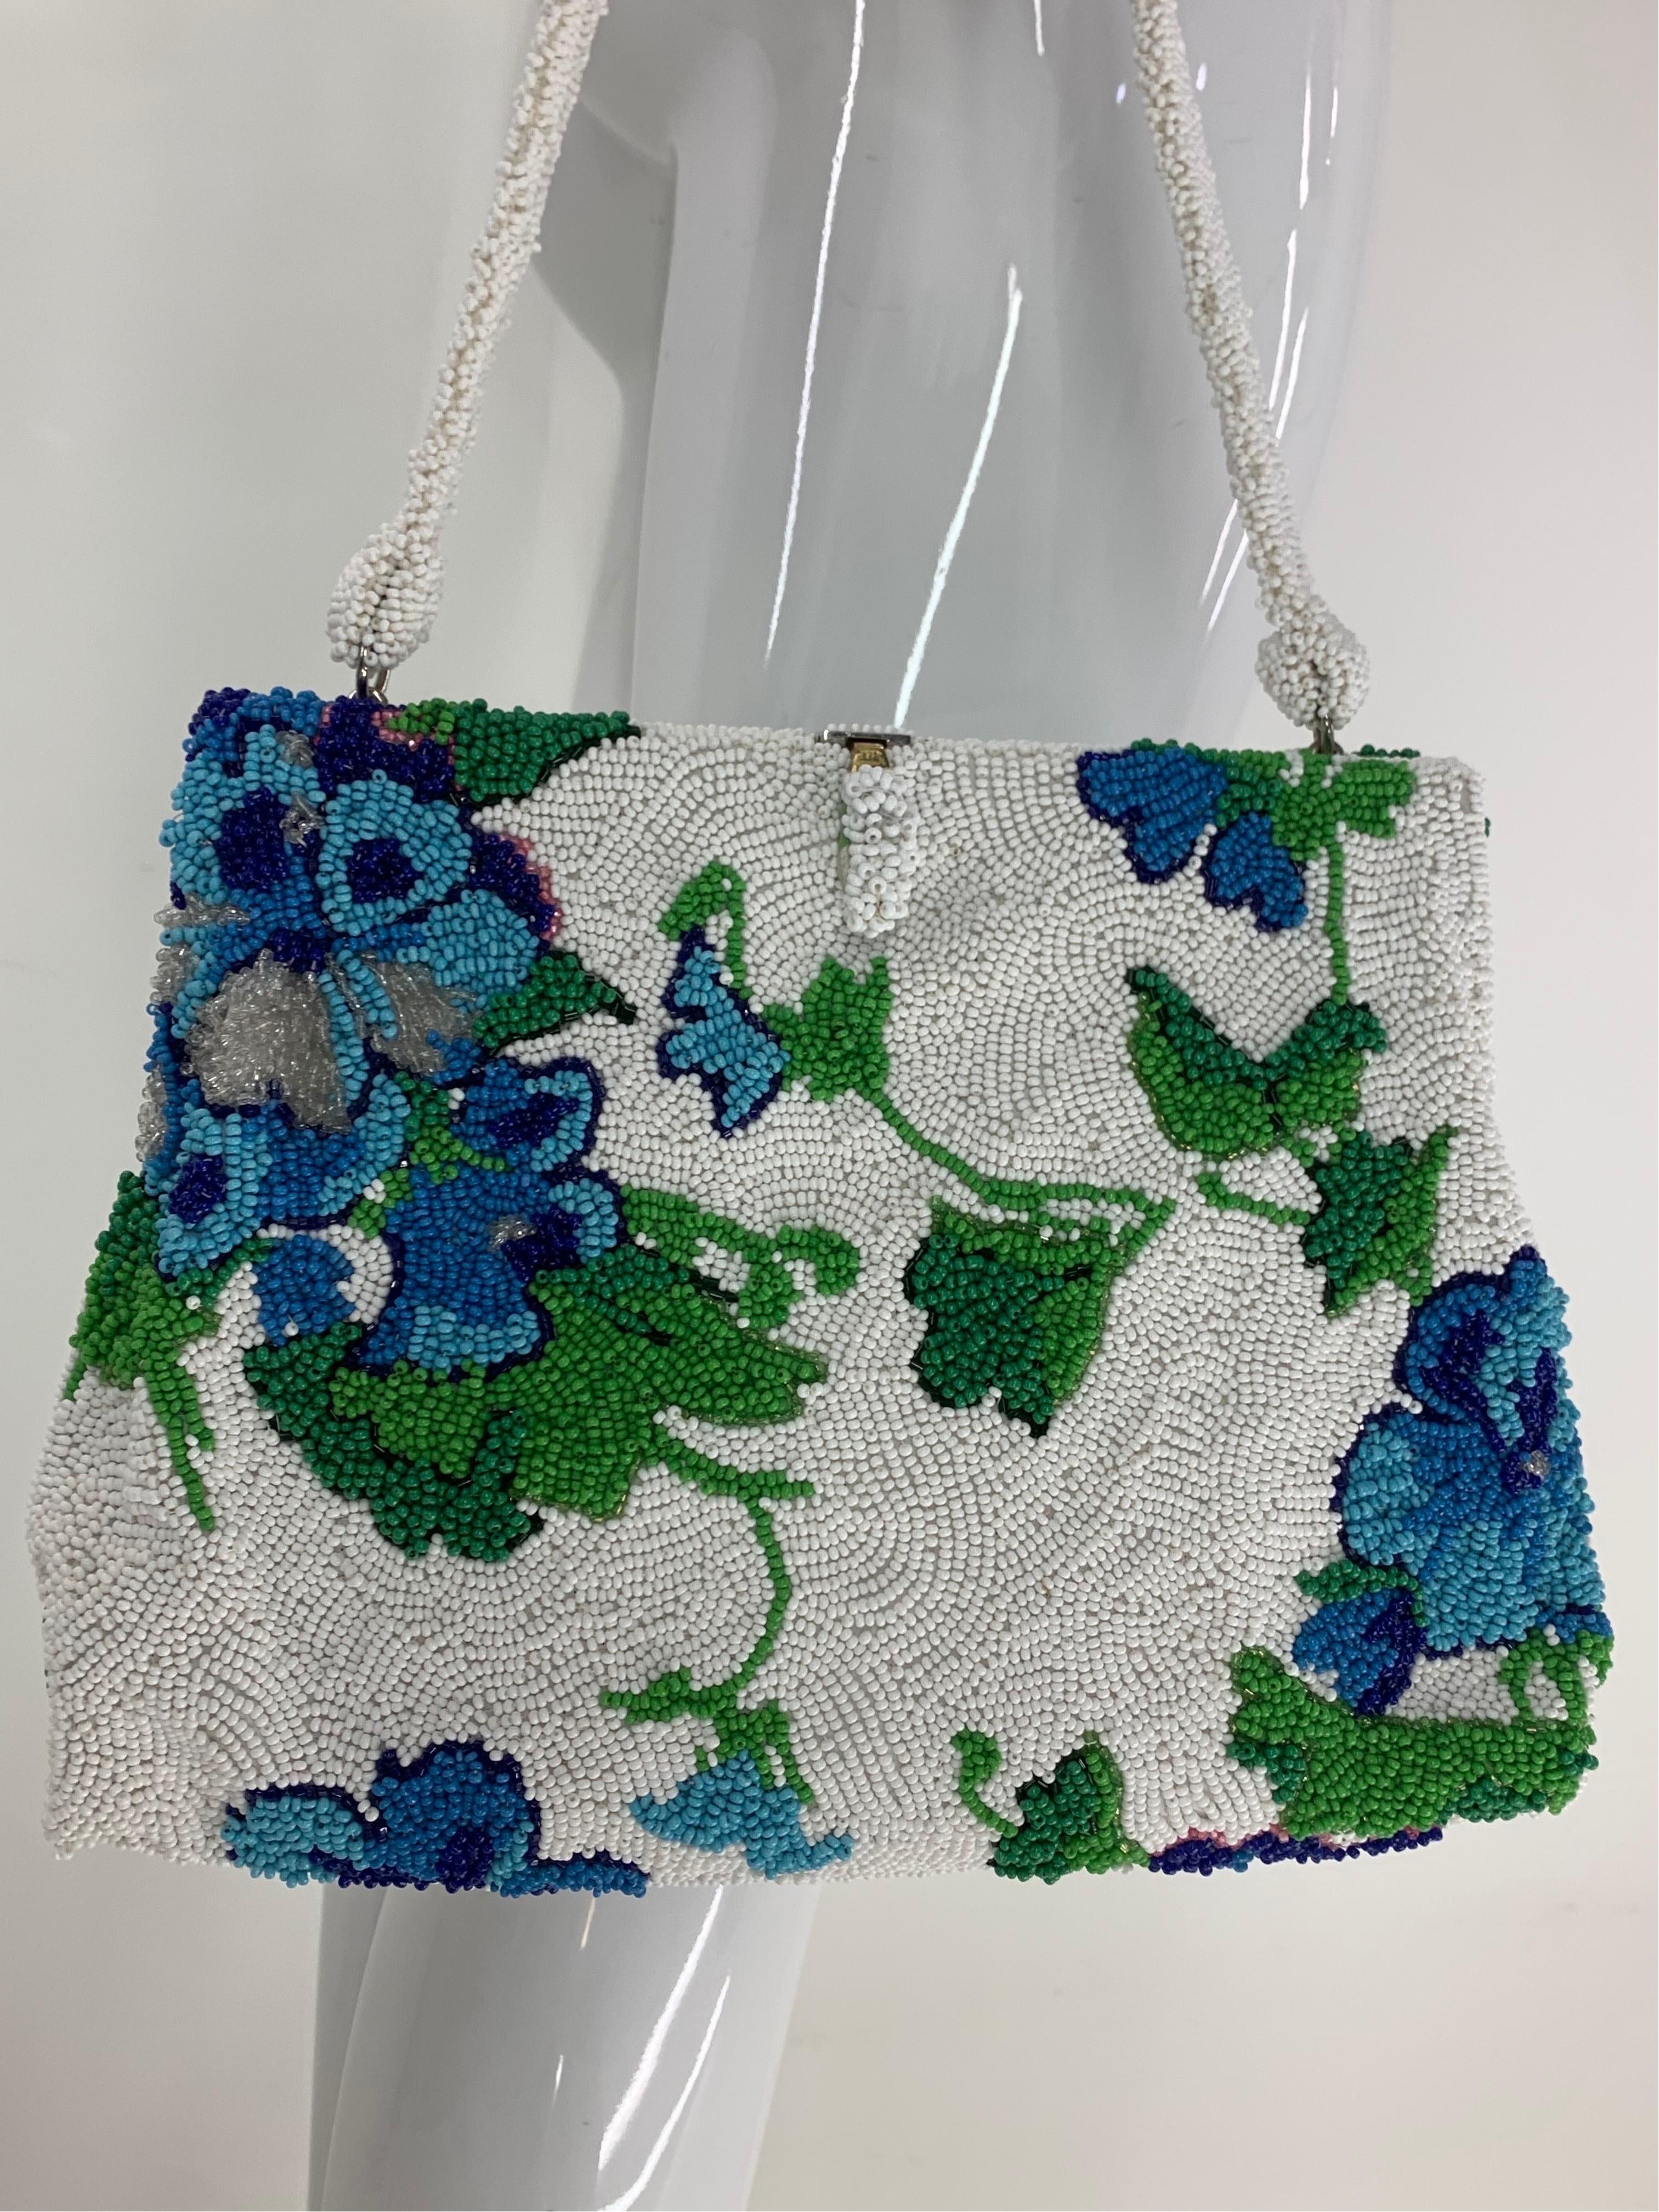 1950 Koret Tresor Stunning Floral Beaded Handbag In Green & Blue On White Ground For Sale 7